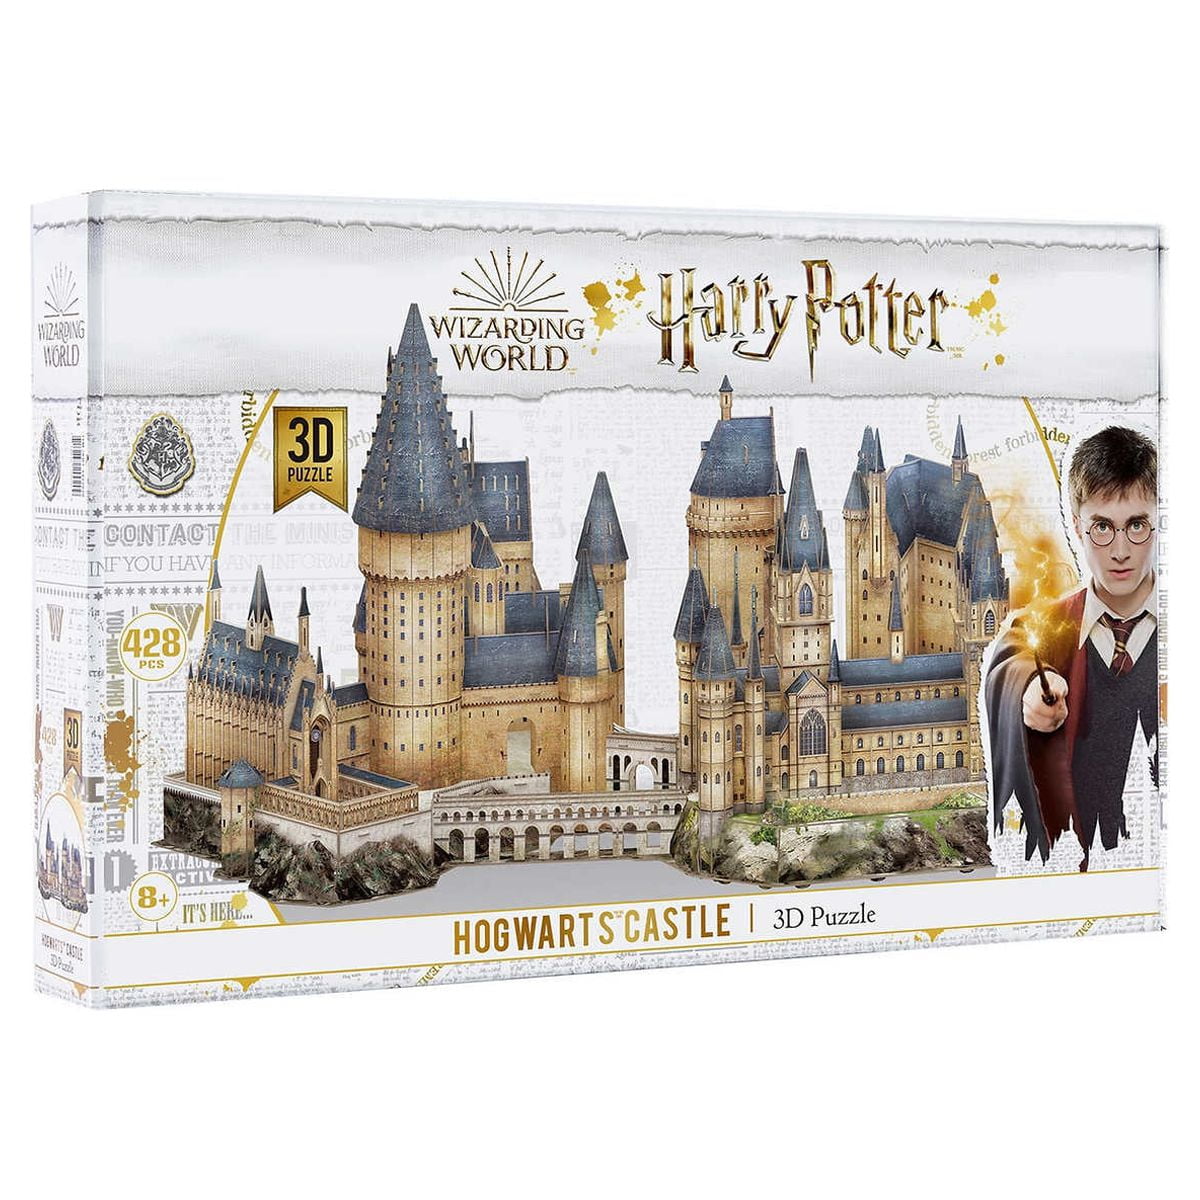 4D Build Harry Potter Hogwarts Castle 3D Puzzle Model Kit